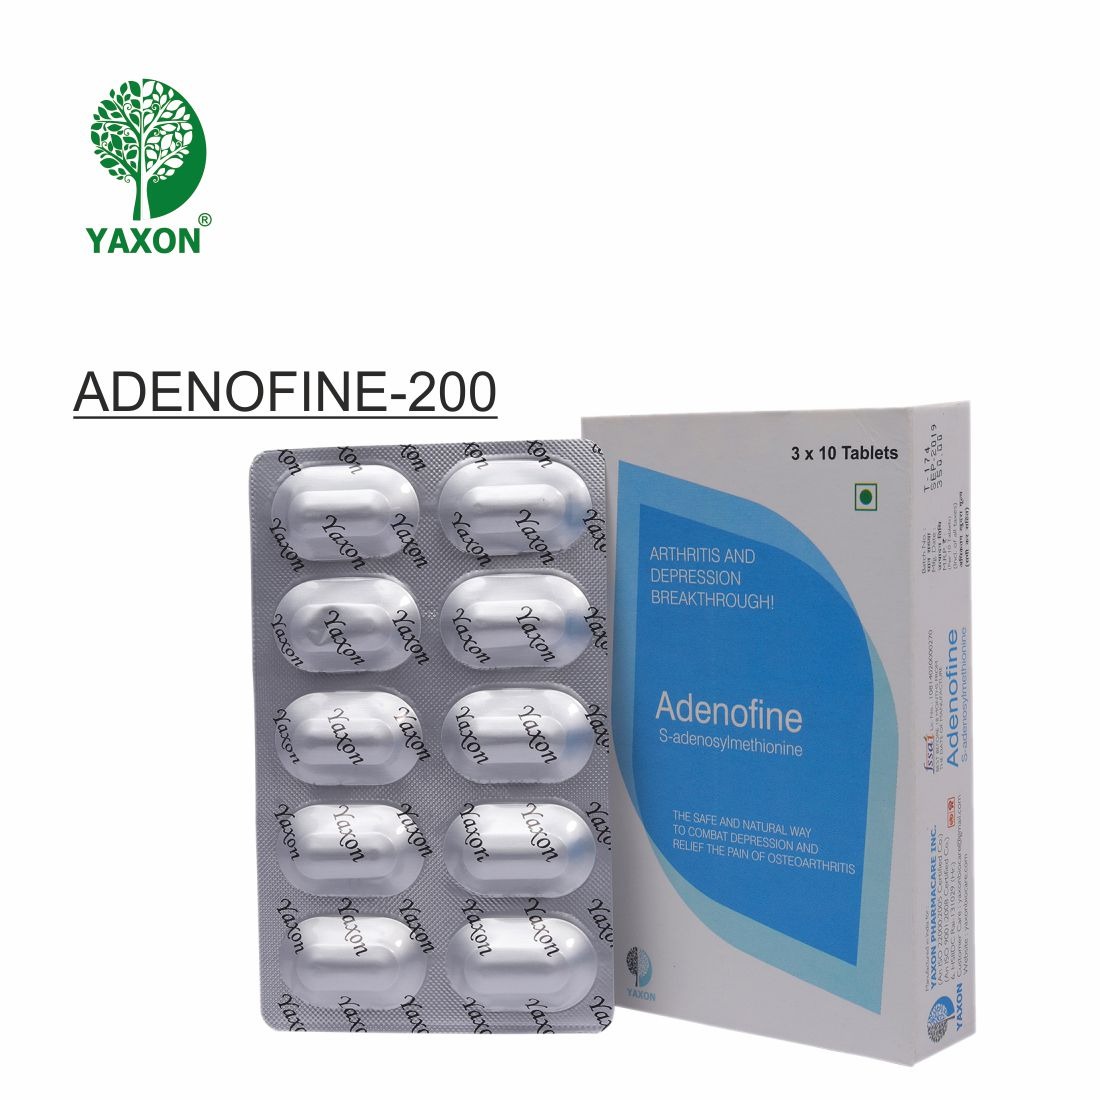 YAXON ADENOFINE 200 Tablets